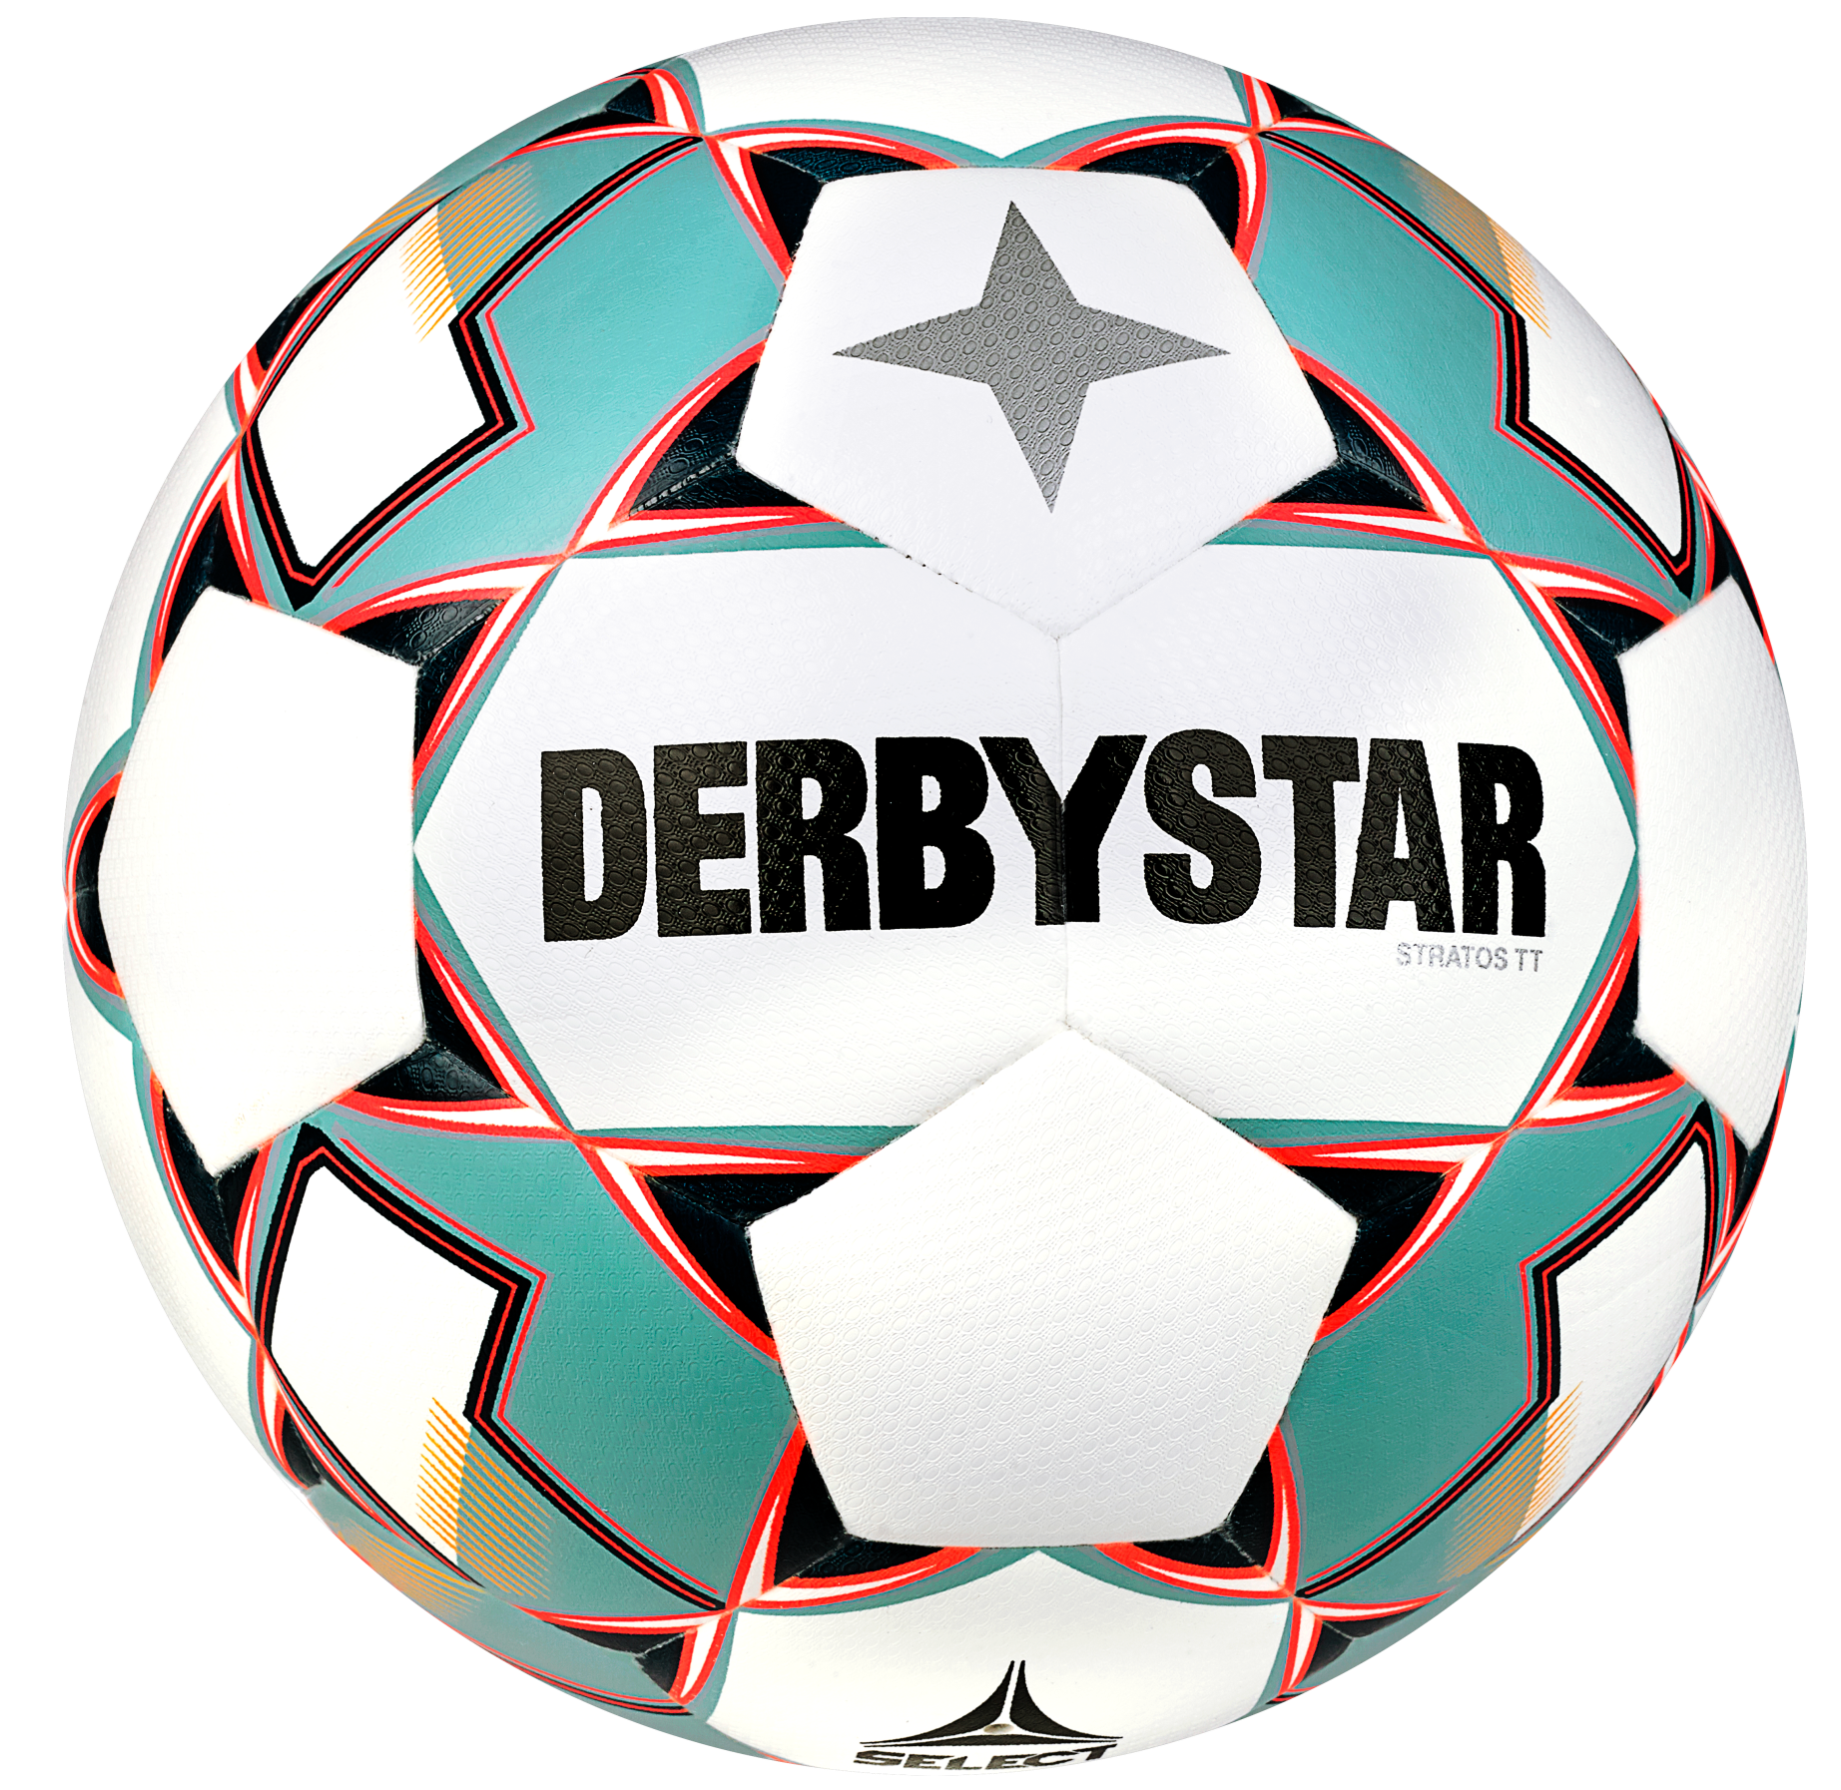 Žoga Derbystar Stratos TT v23 Trainingsball